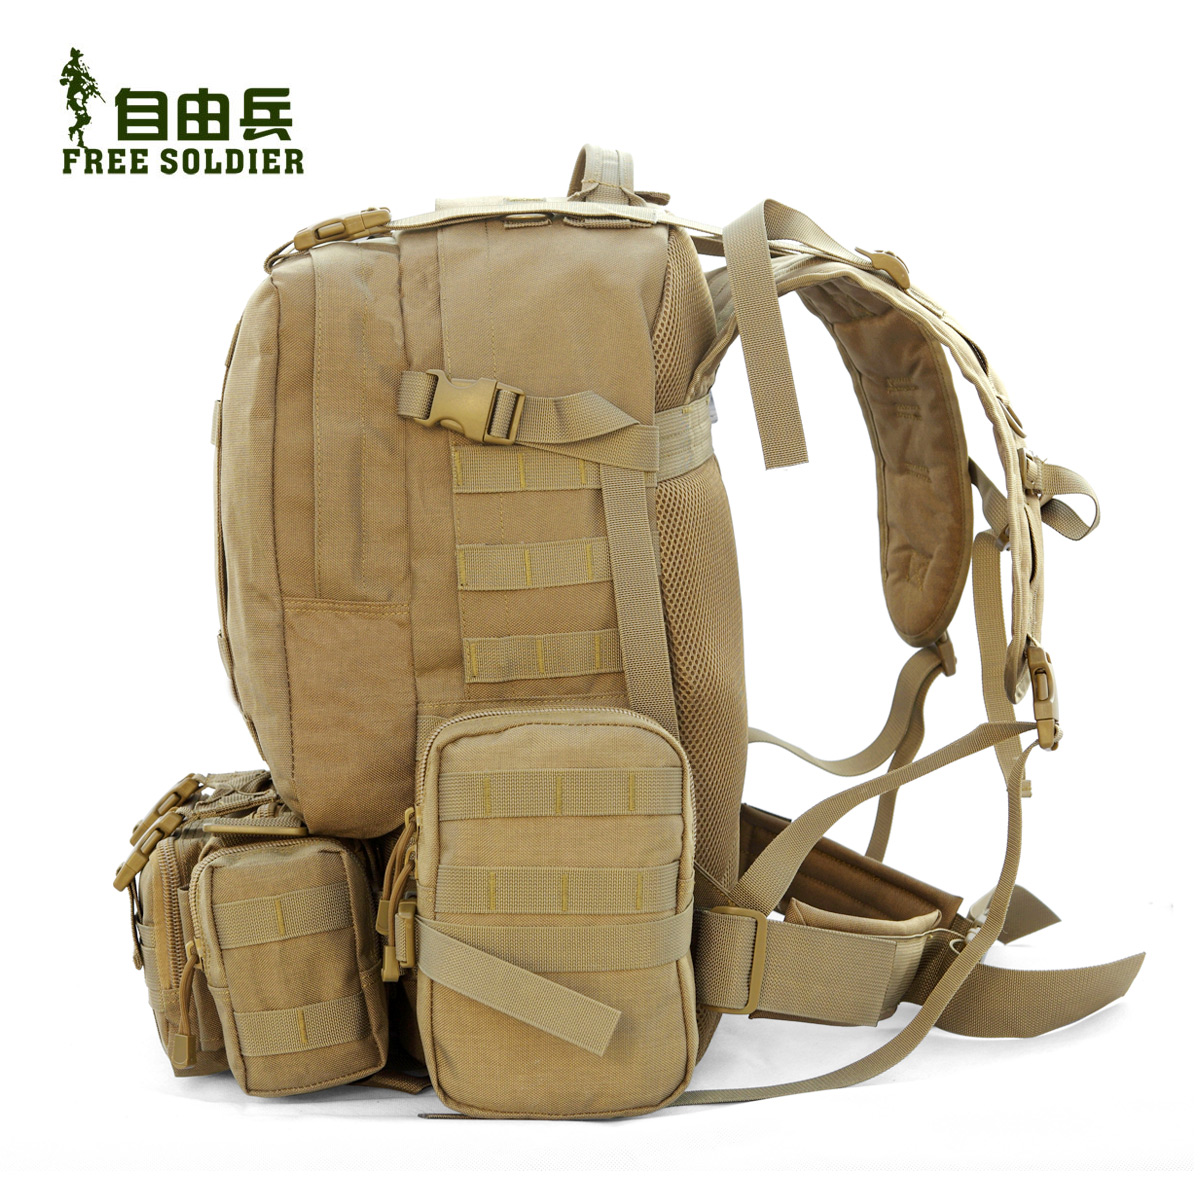 Отзывы покупателей реальные о туристическом рюкзаке free soldier